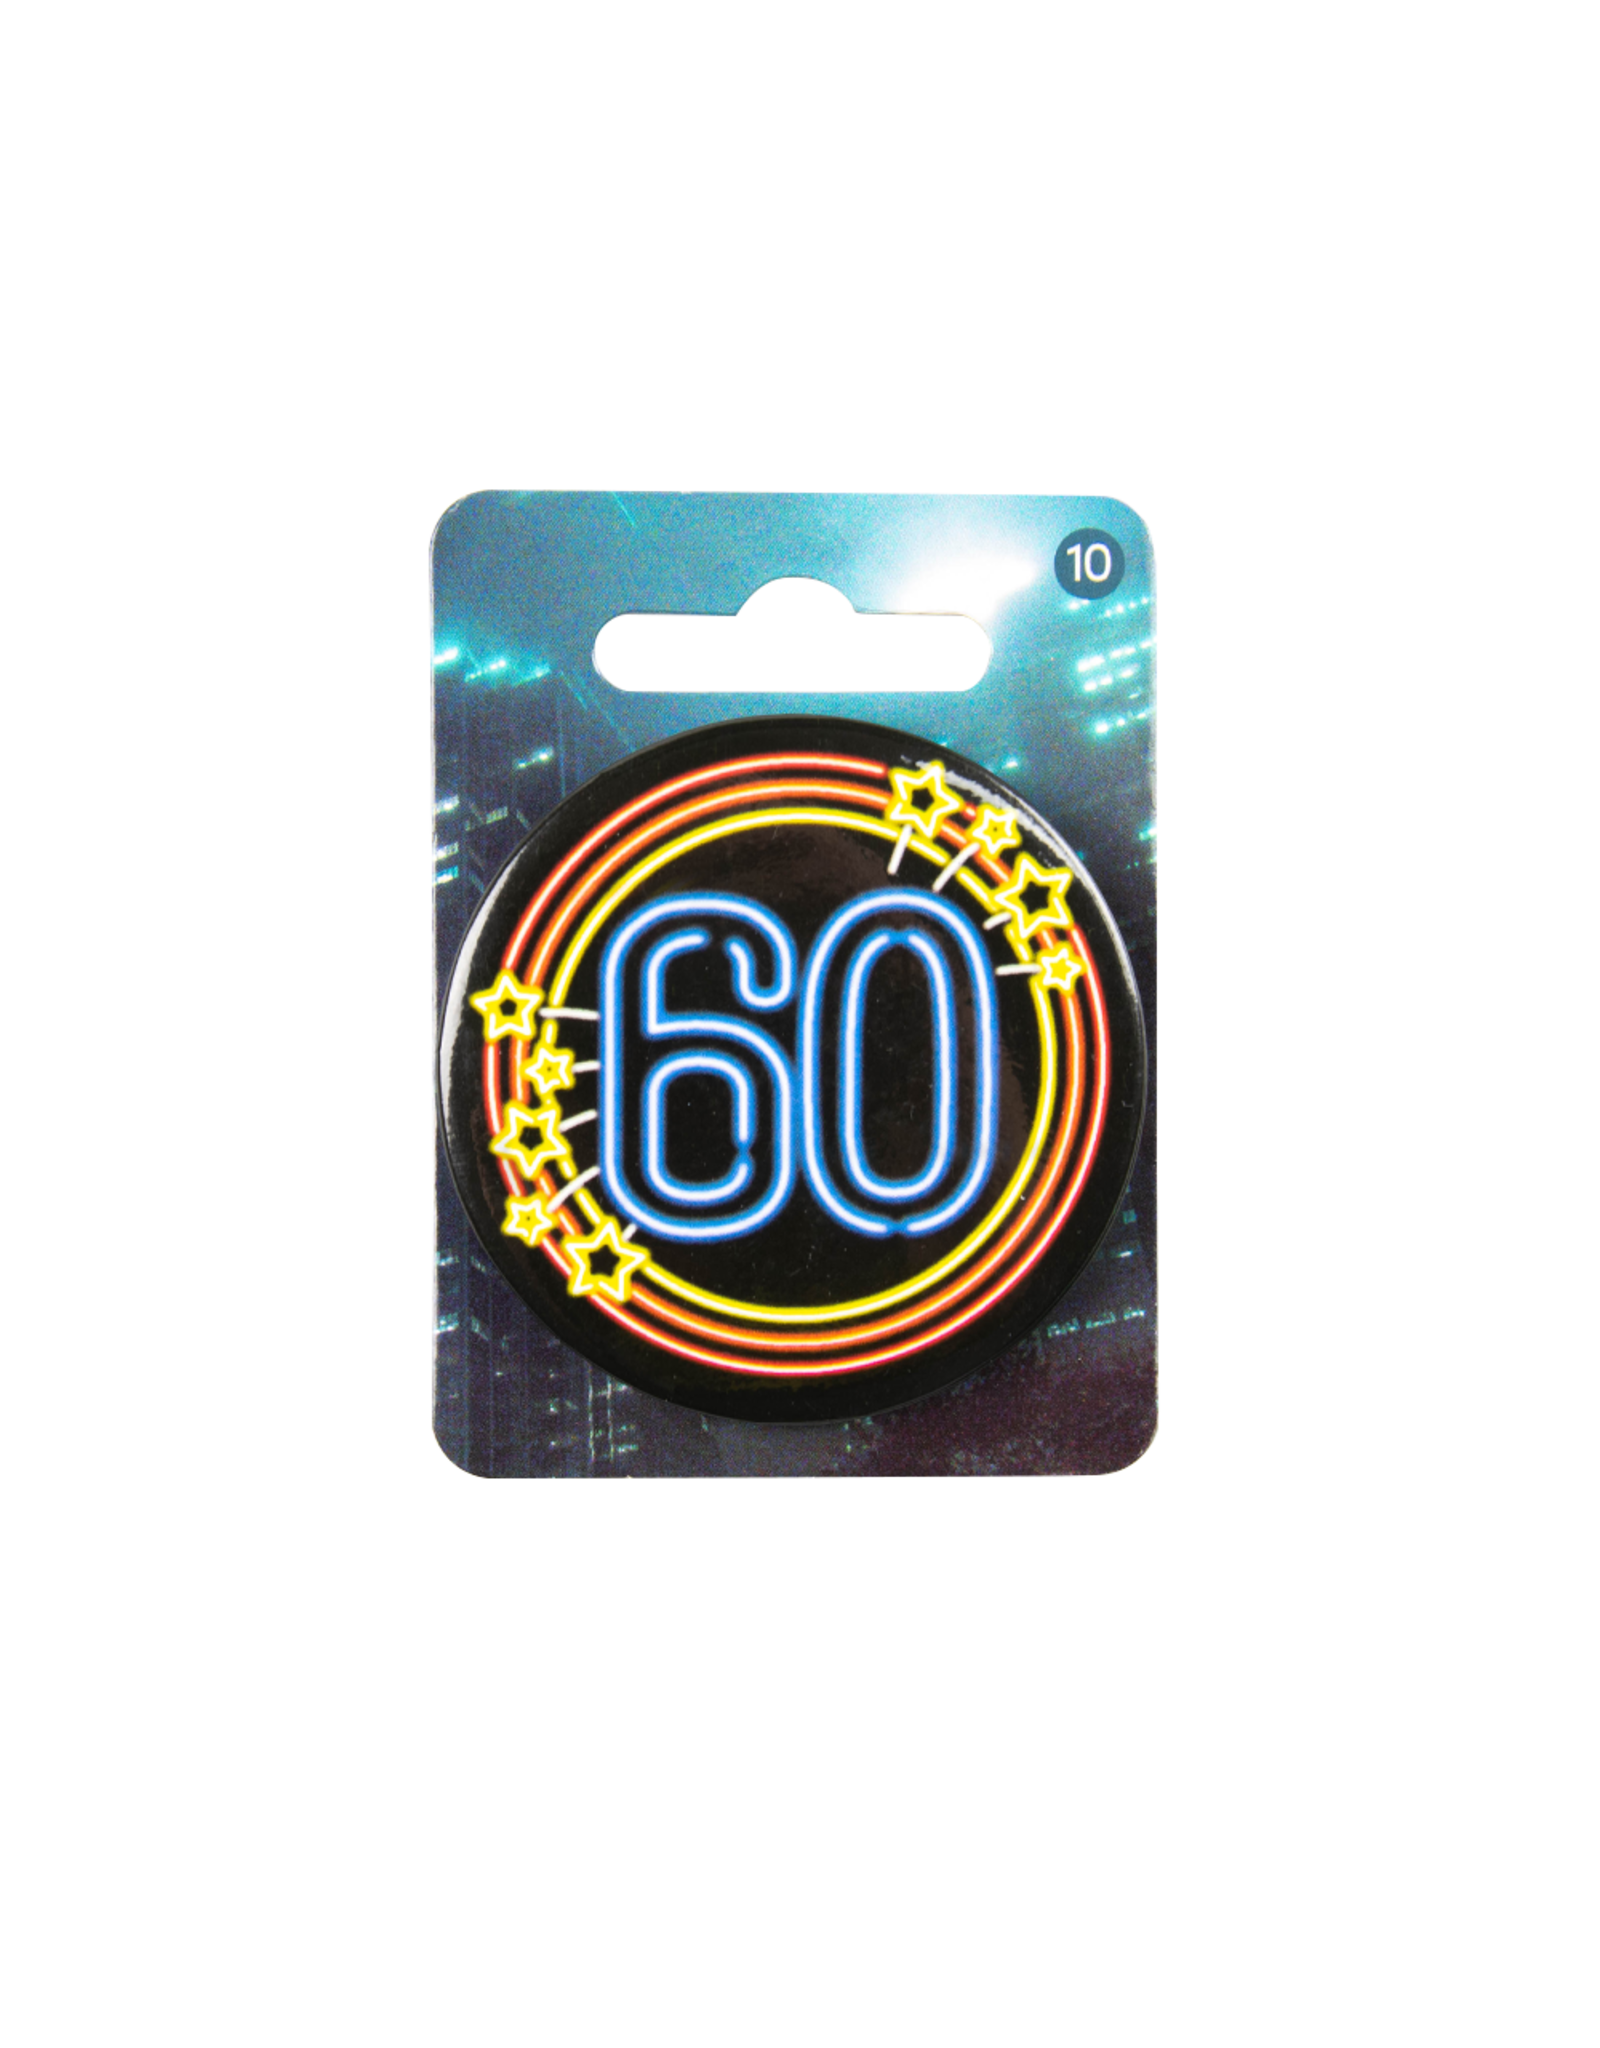 Neon Button - 60